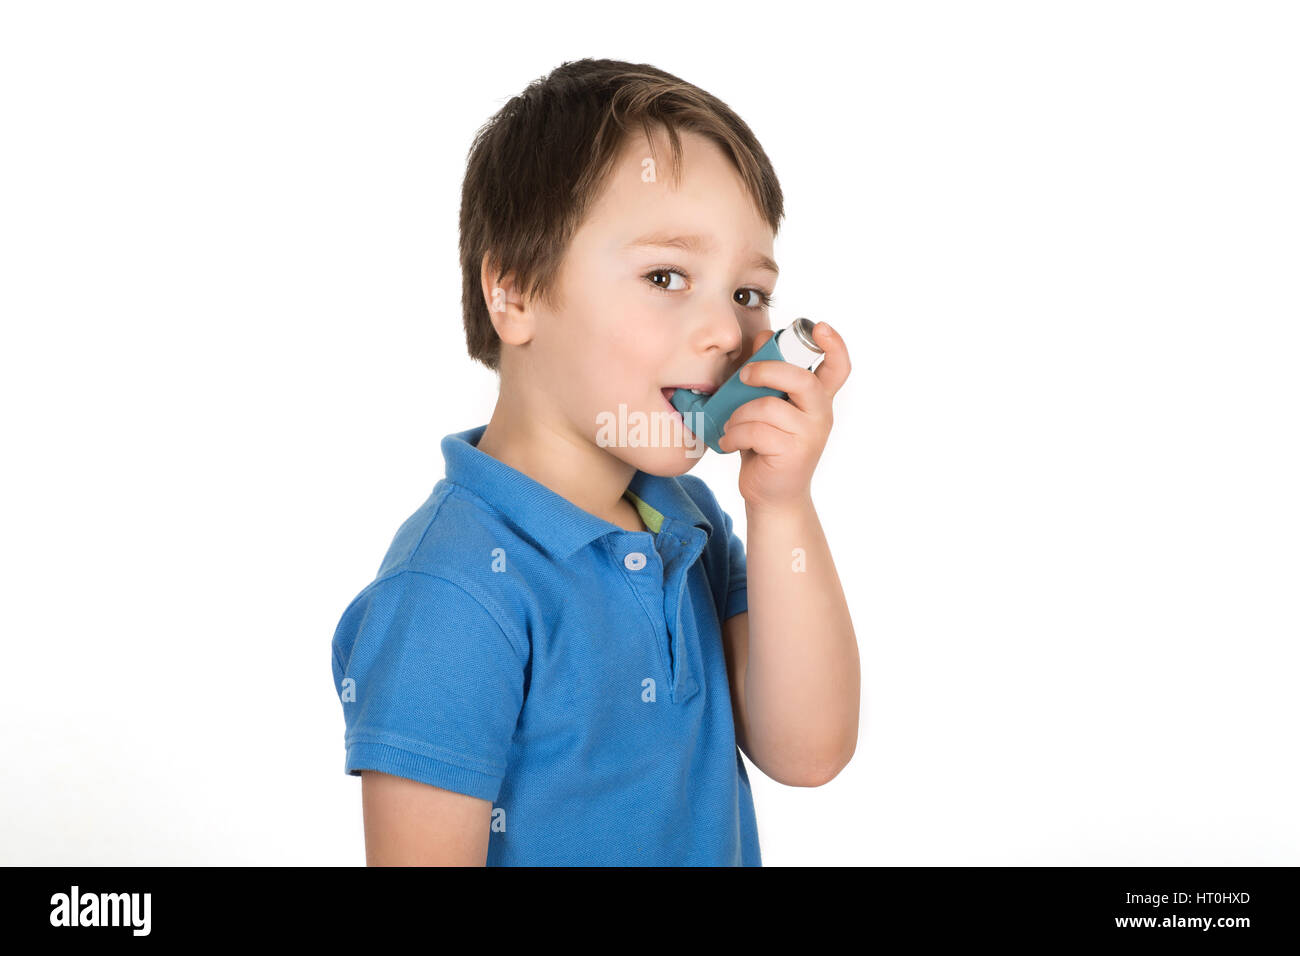 Asthmatischer junge mit einem dosiert-Dose blau Inhalator "Puffer". Isoliert auf weißem Hintergrund. Stockfoto